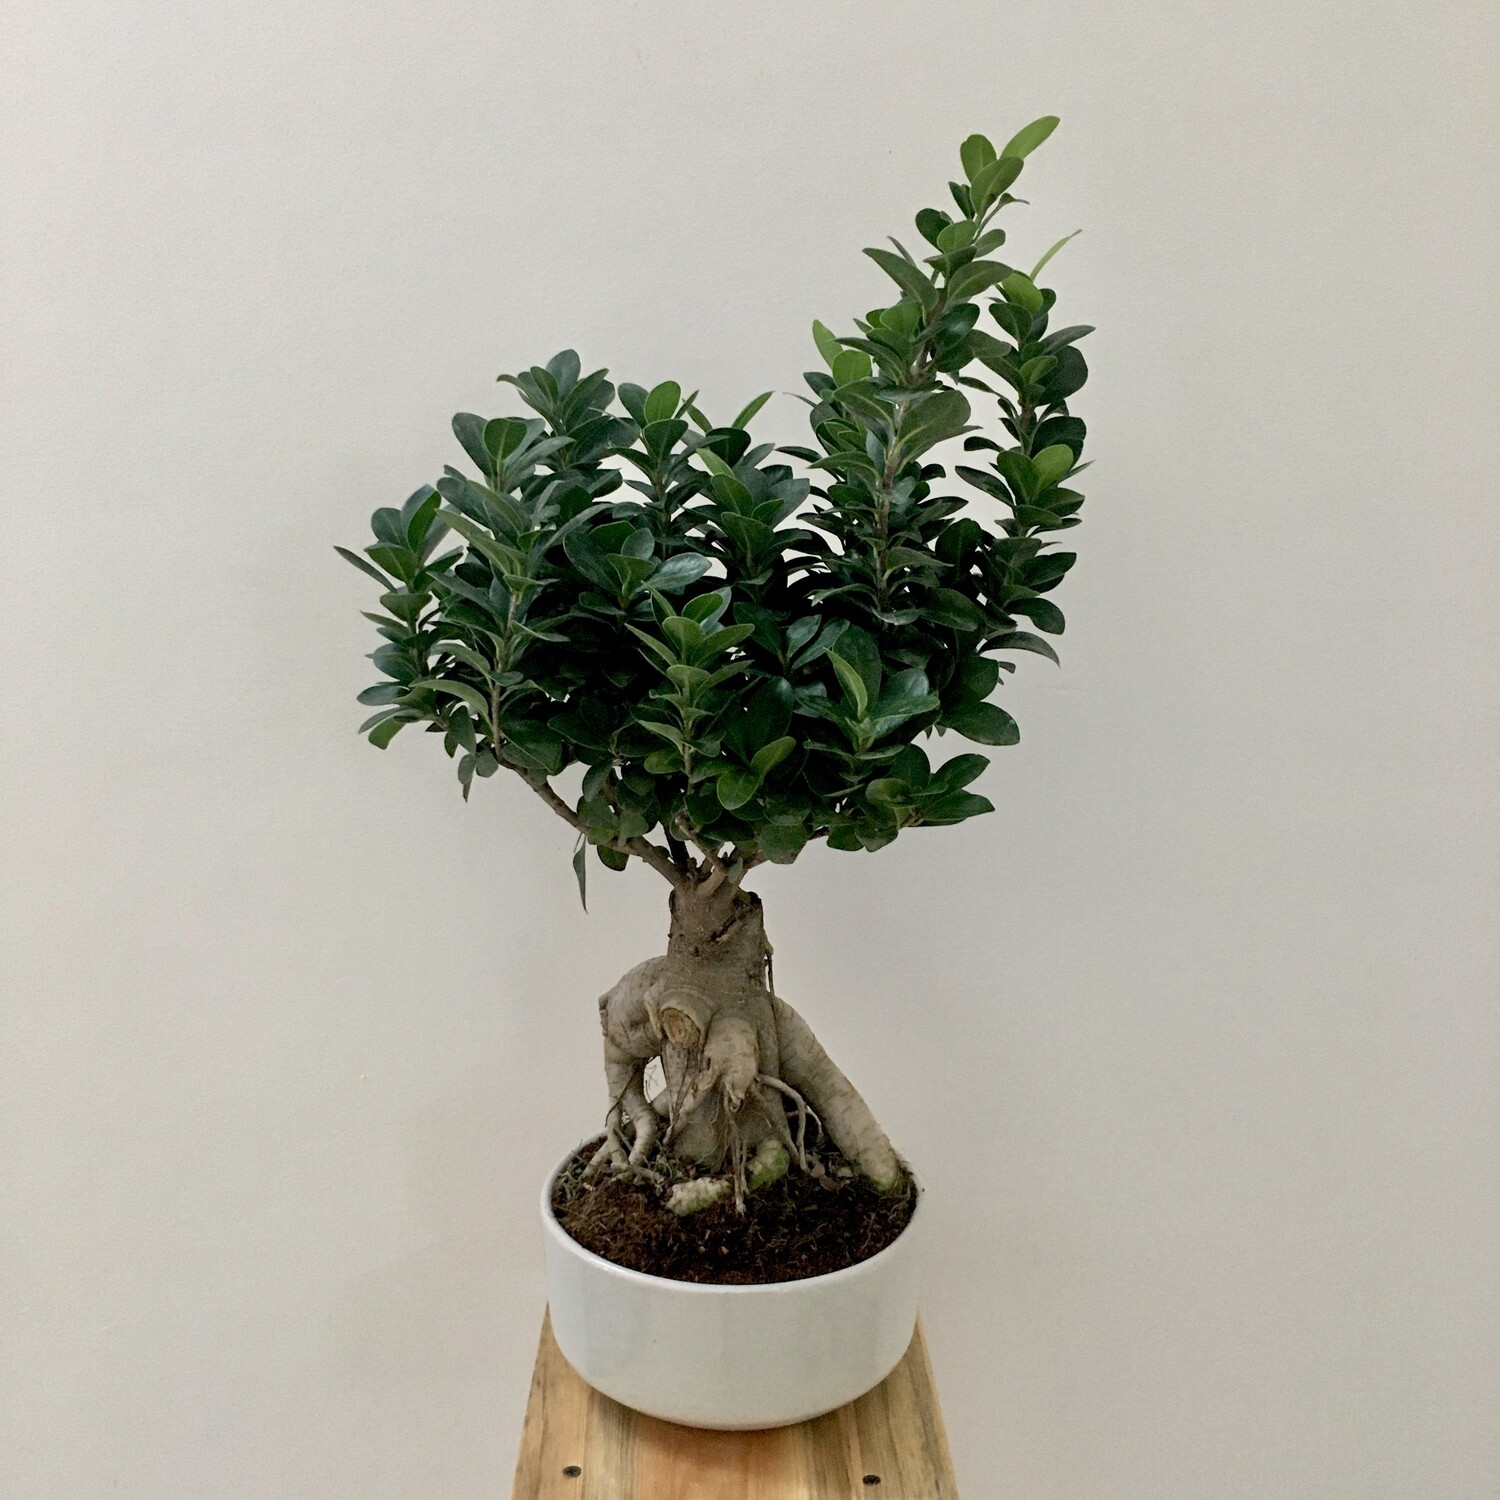 Ficus Bonsai in 7 inches Round Ceramic Bonsai Pot